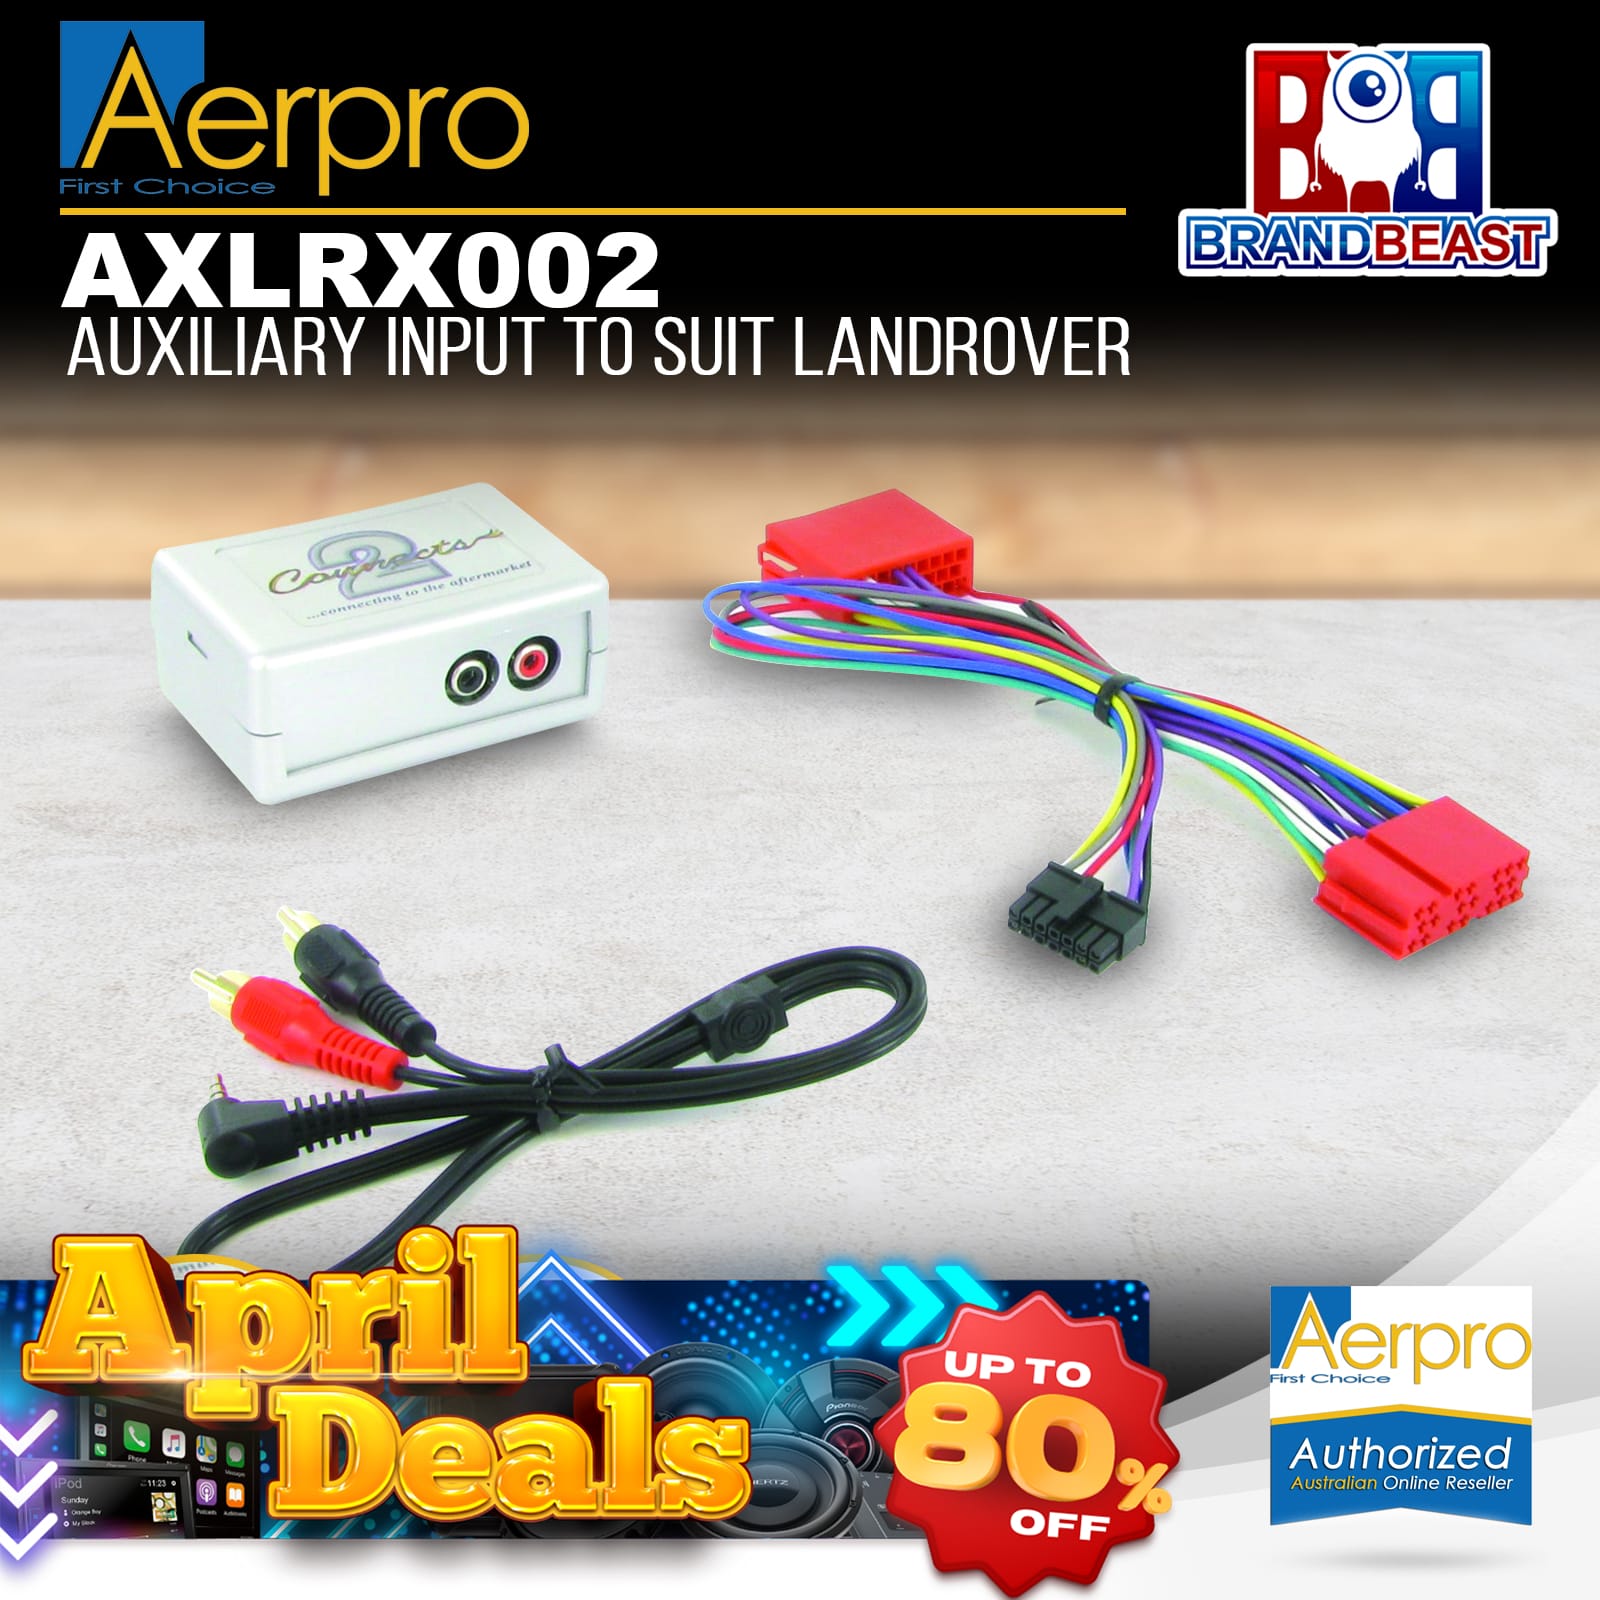 AXLRX002